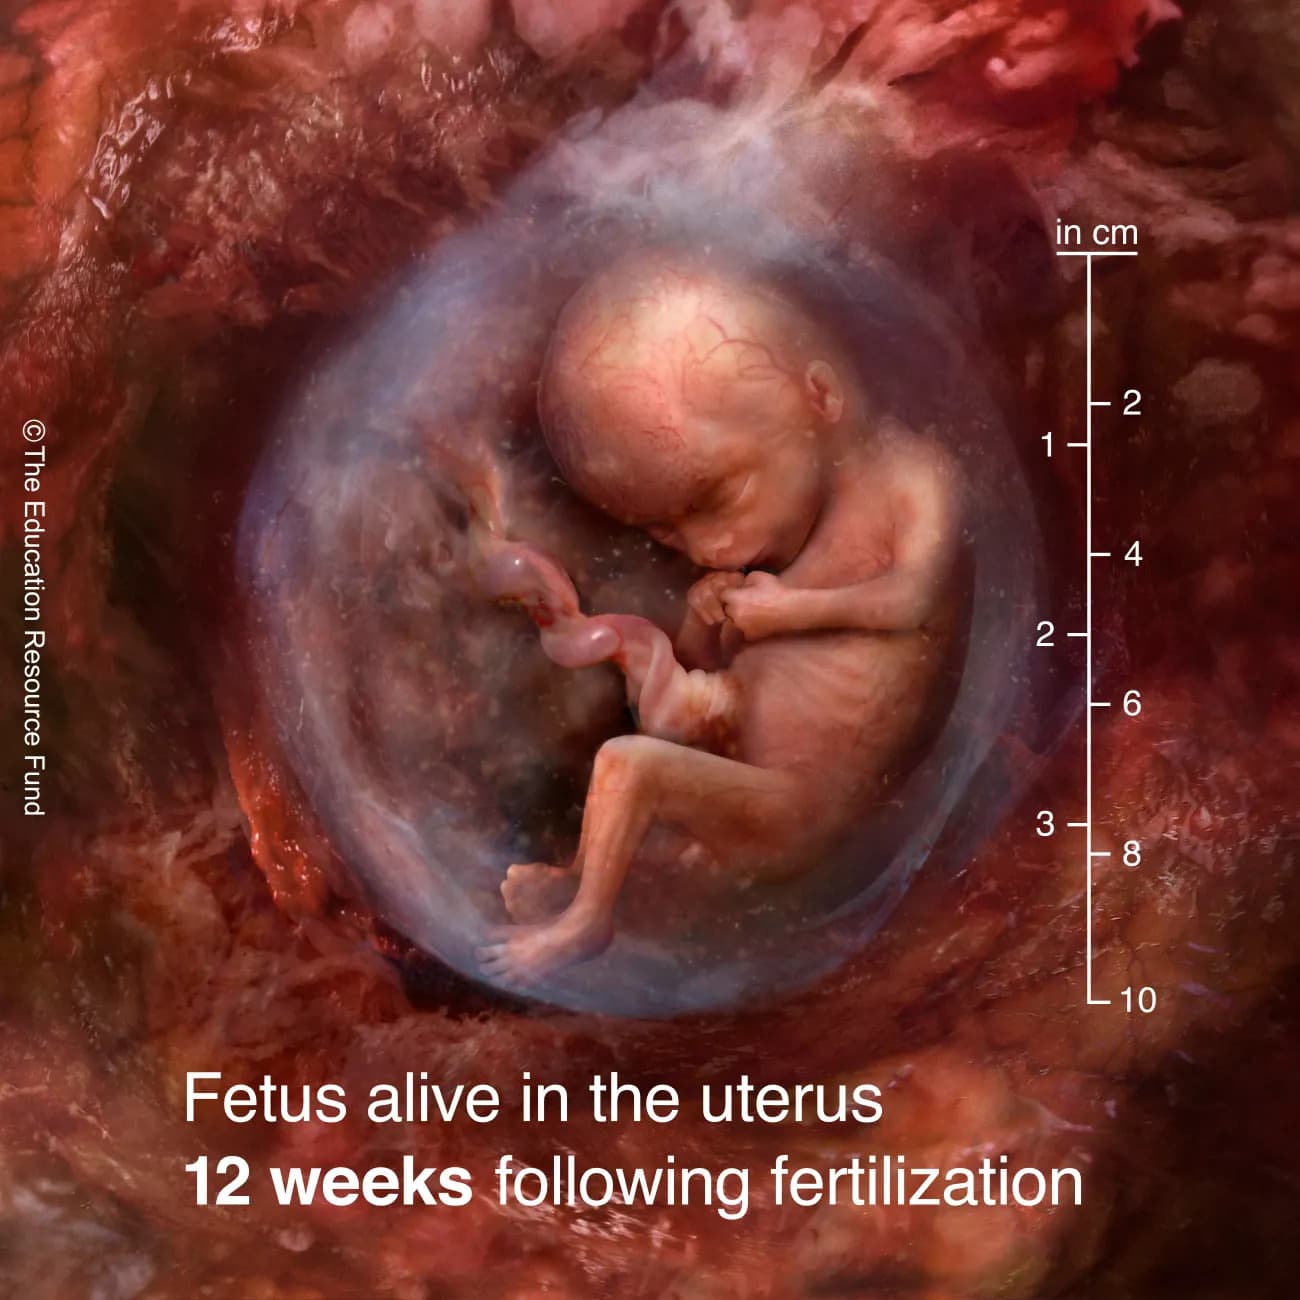 Fetus alive in the uterus 12 weeks following fertilization